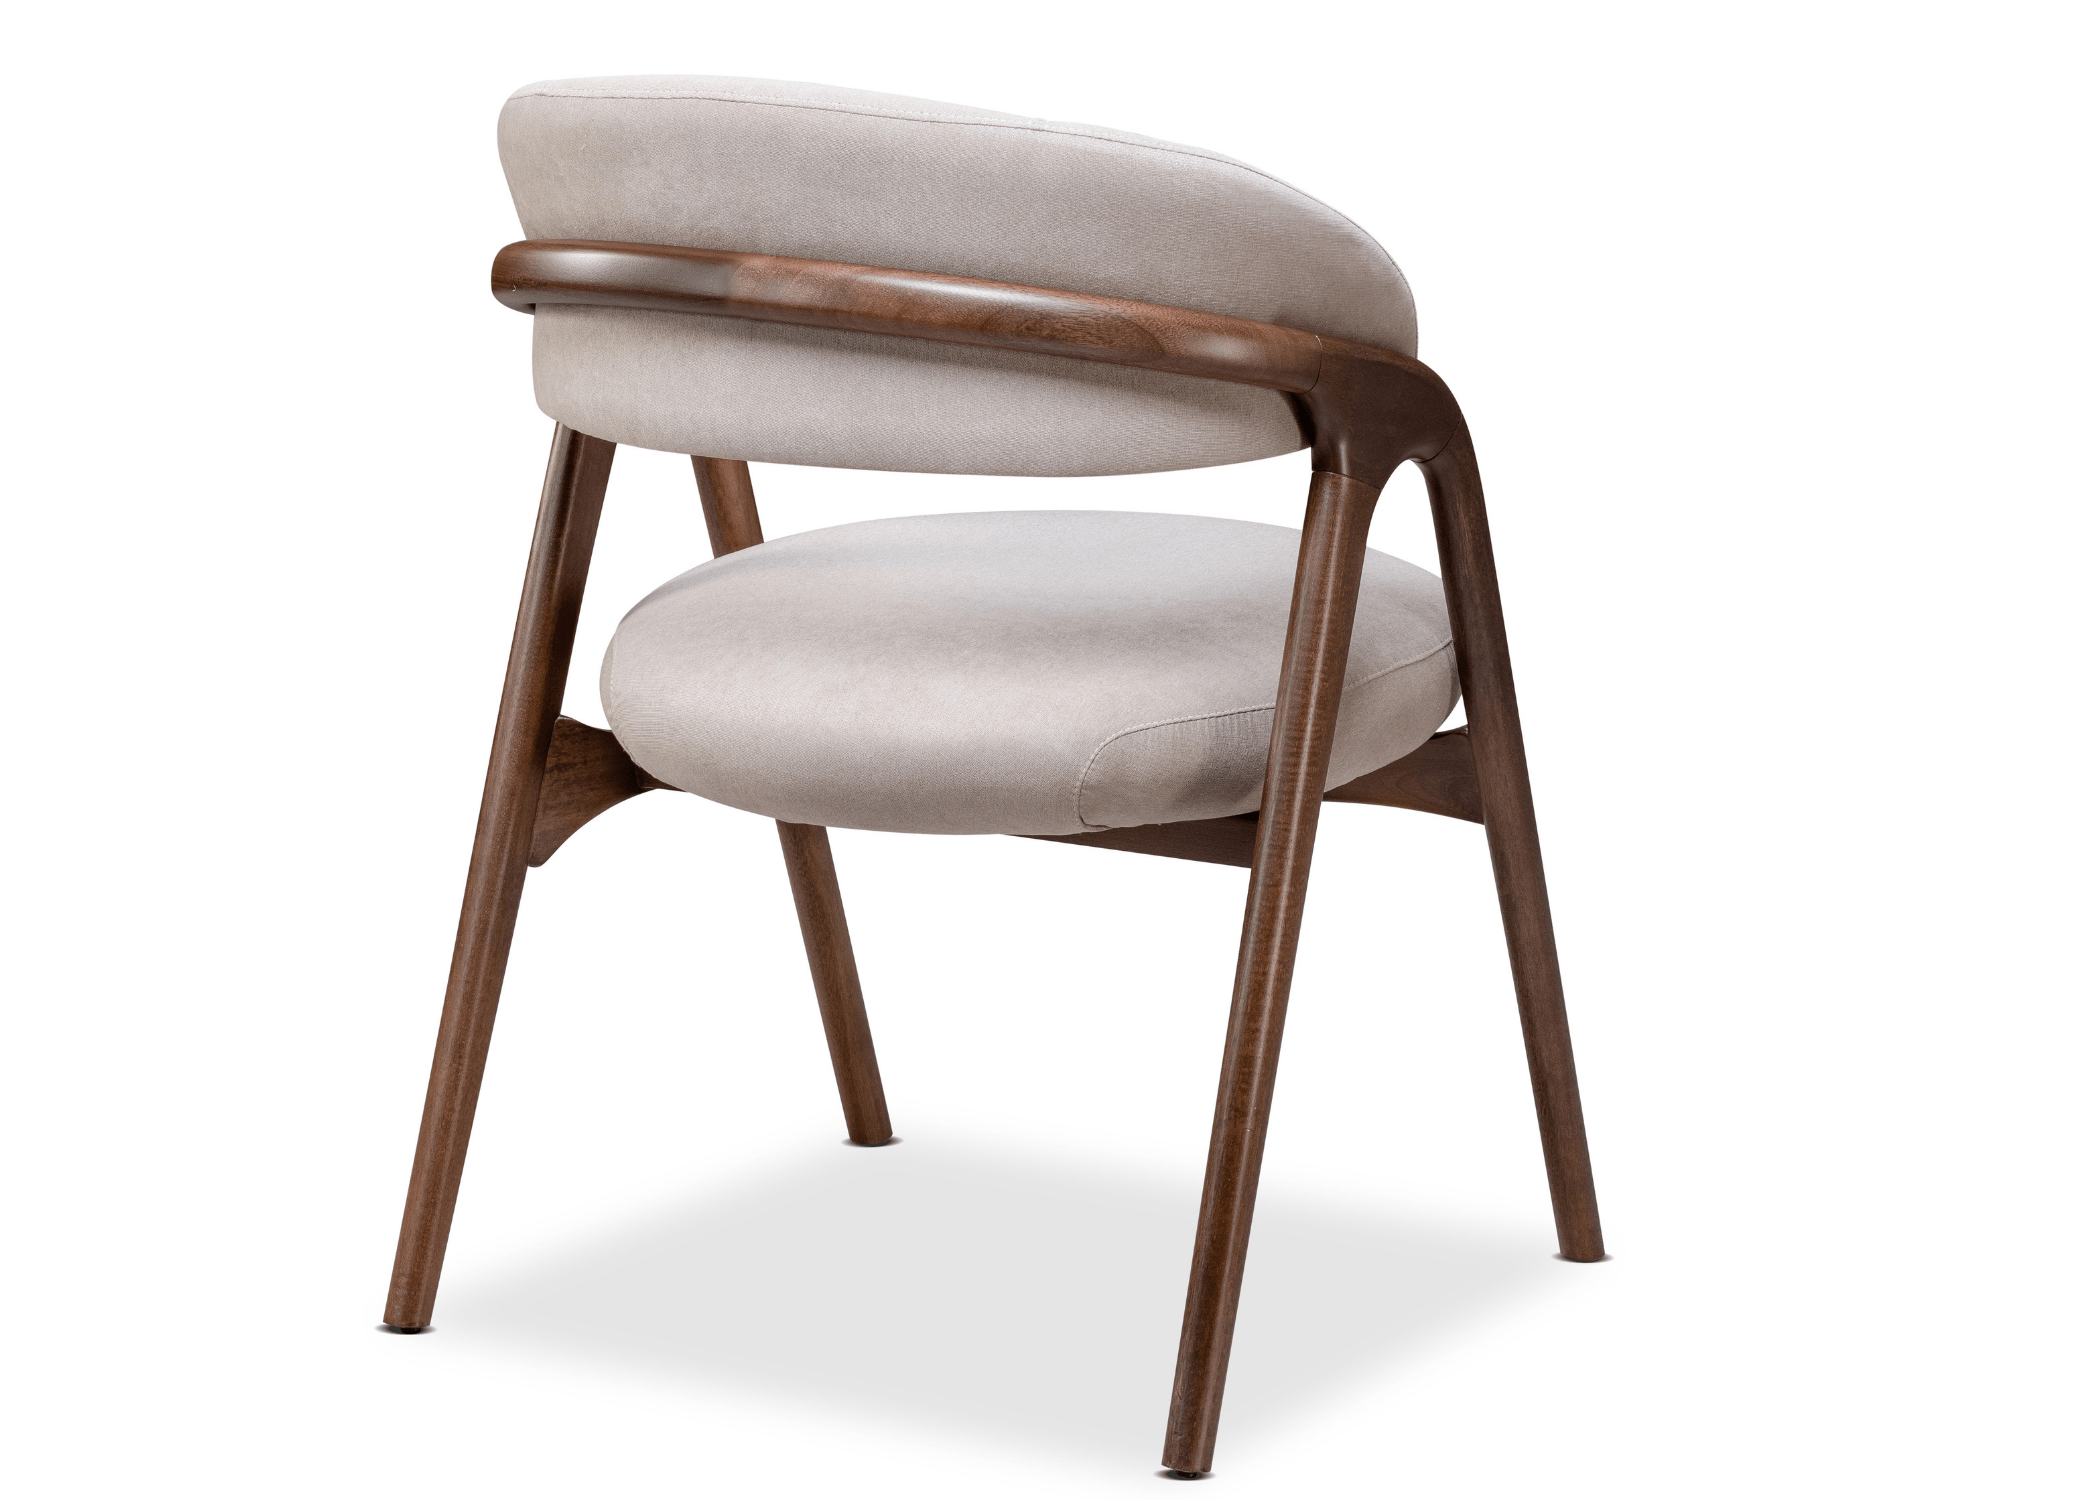 A cadeira Eros é uma peça de mobiliário que oferece uma fusão única entre elegância e design